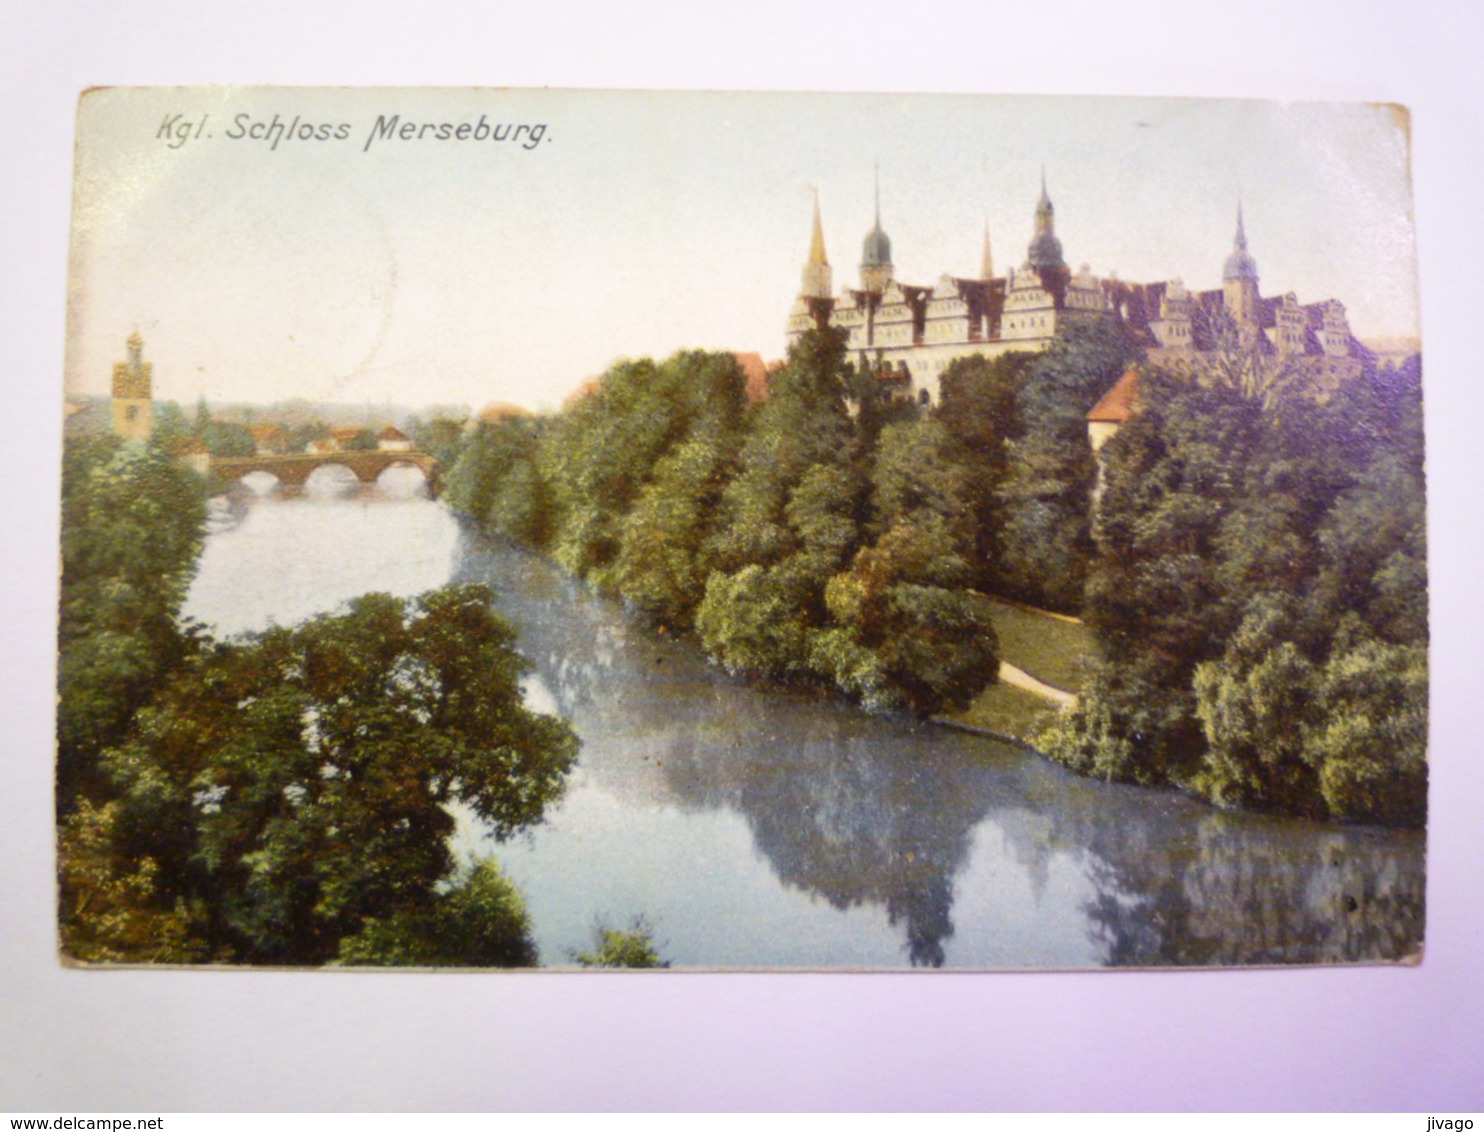 Kgl.  SCHLOSS  MERSEBURG  A. S.  1907    - Merseburg